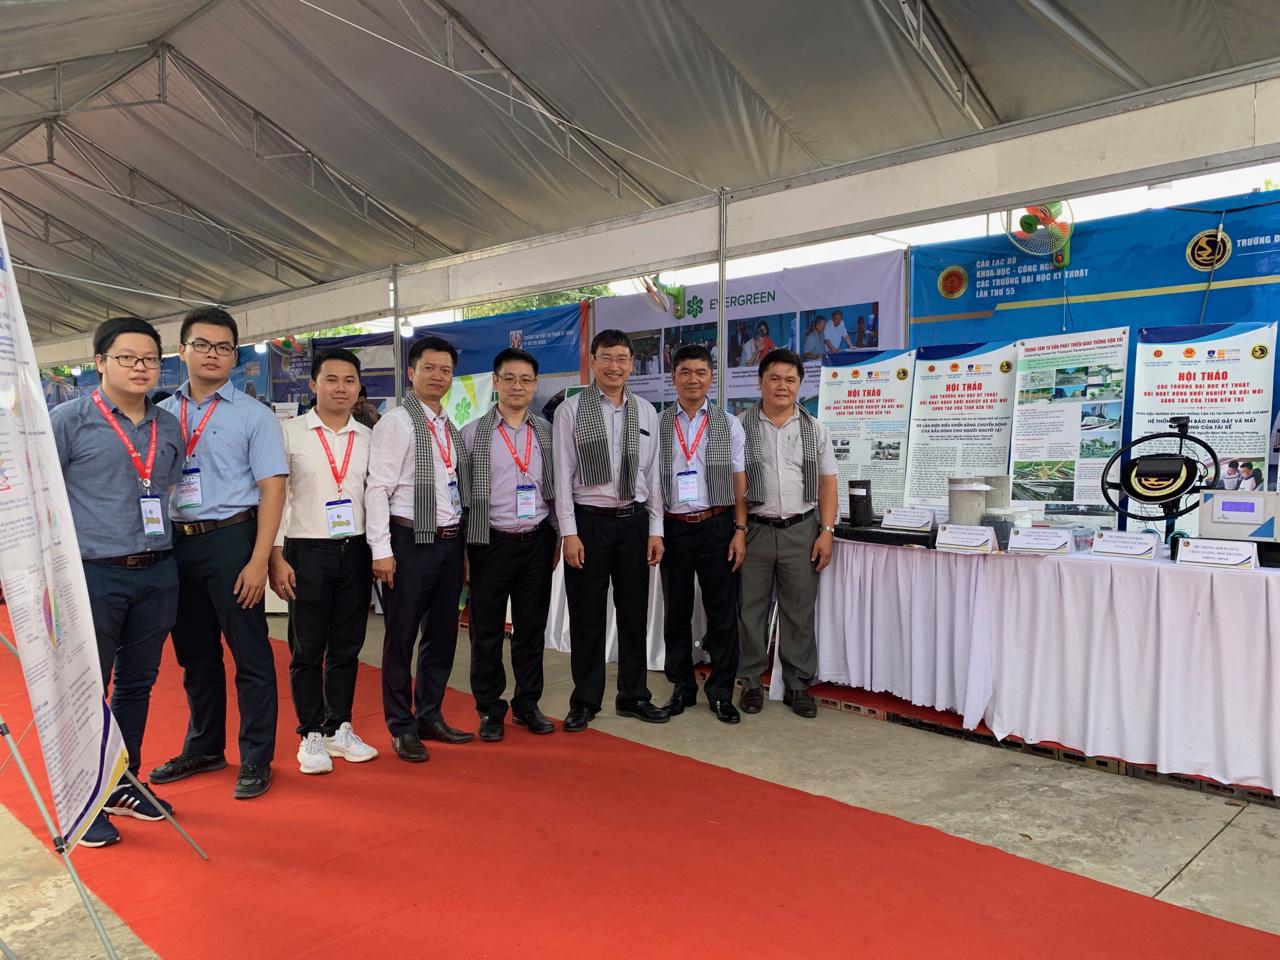 Trường Đại học GTVT tham dự Lễ ra mắt 'Không gian khởi nghiệp - Đổi mới sáng tạo” (Mekong Innovation HUB) của tỉnh Bến Tre